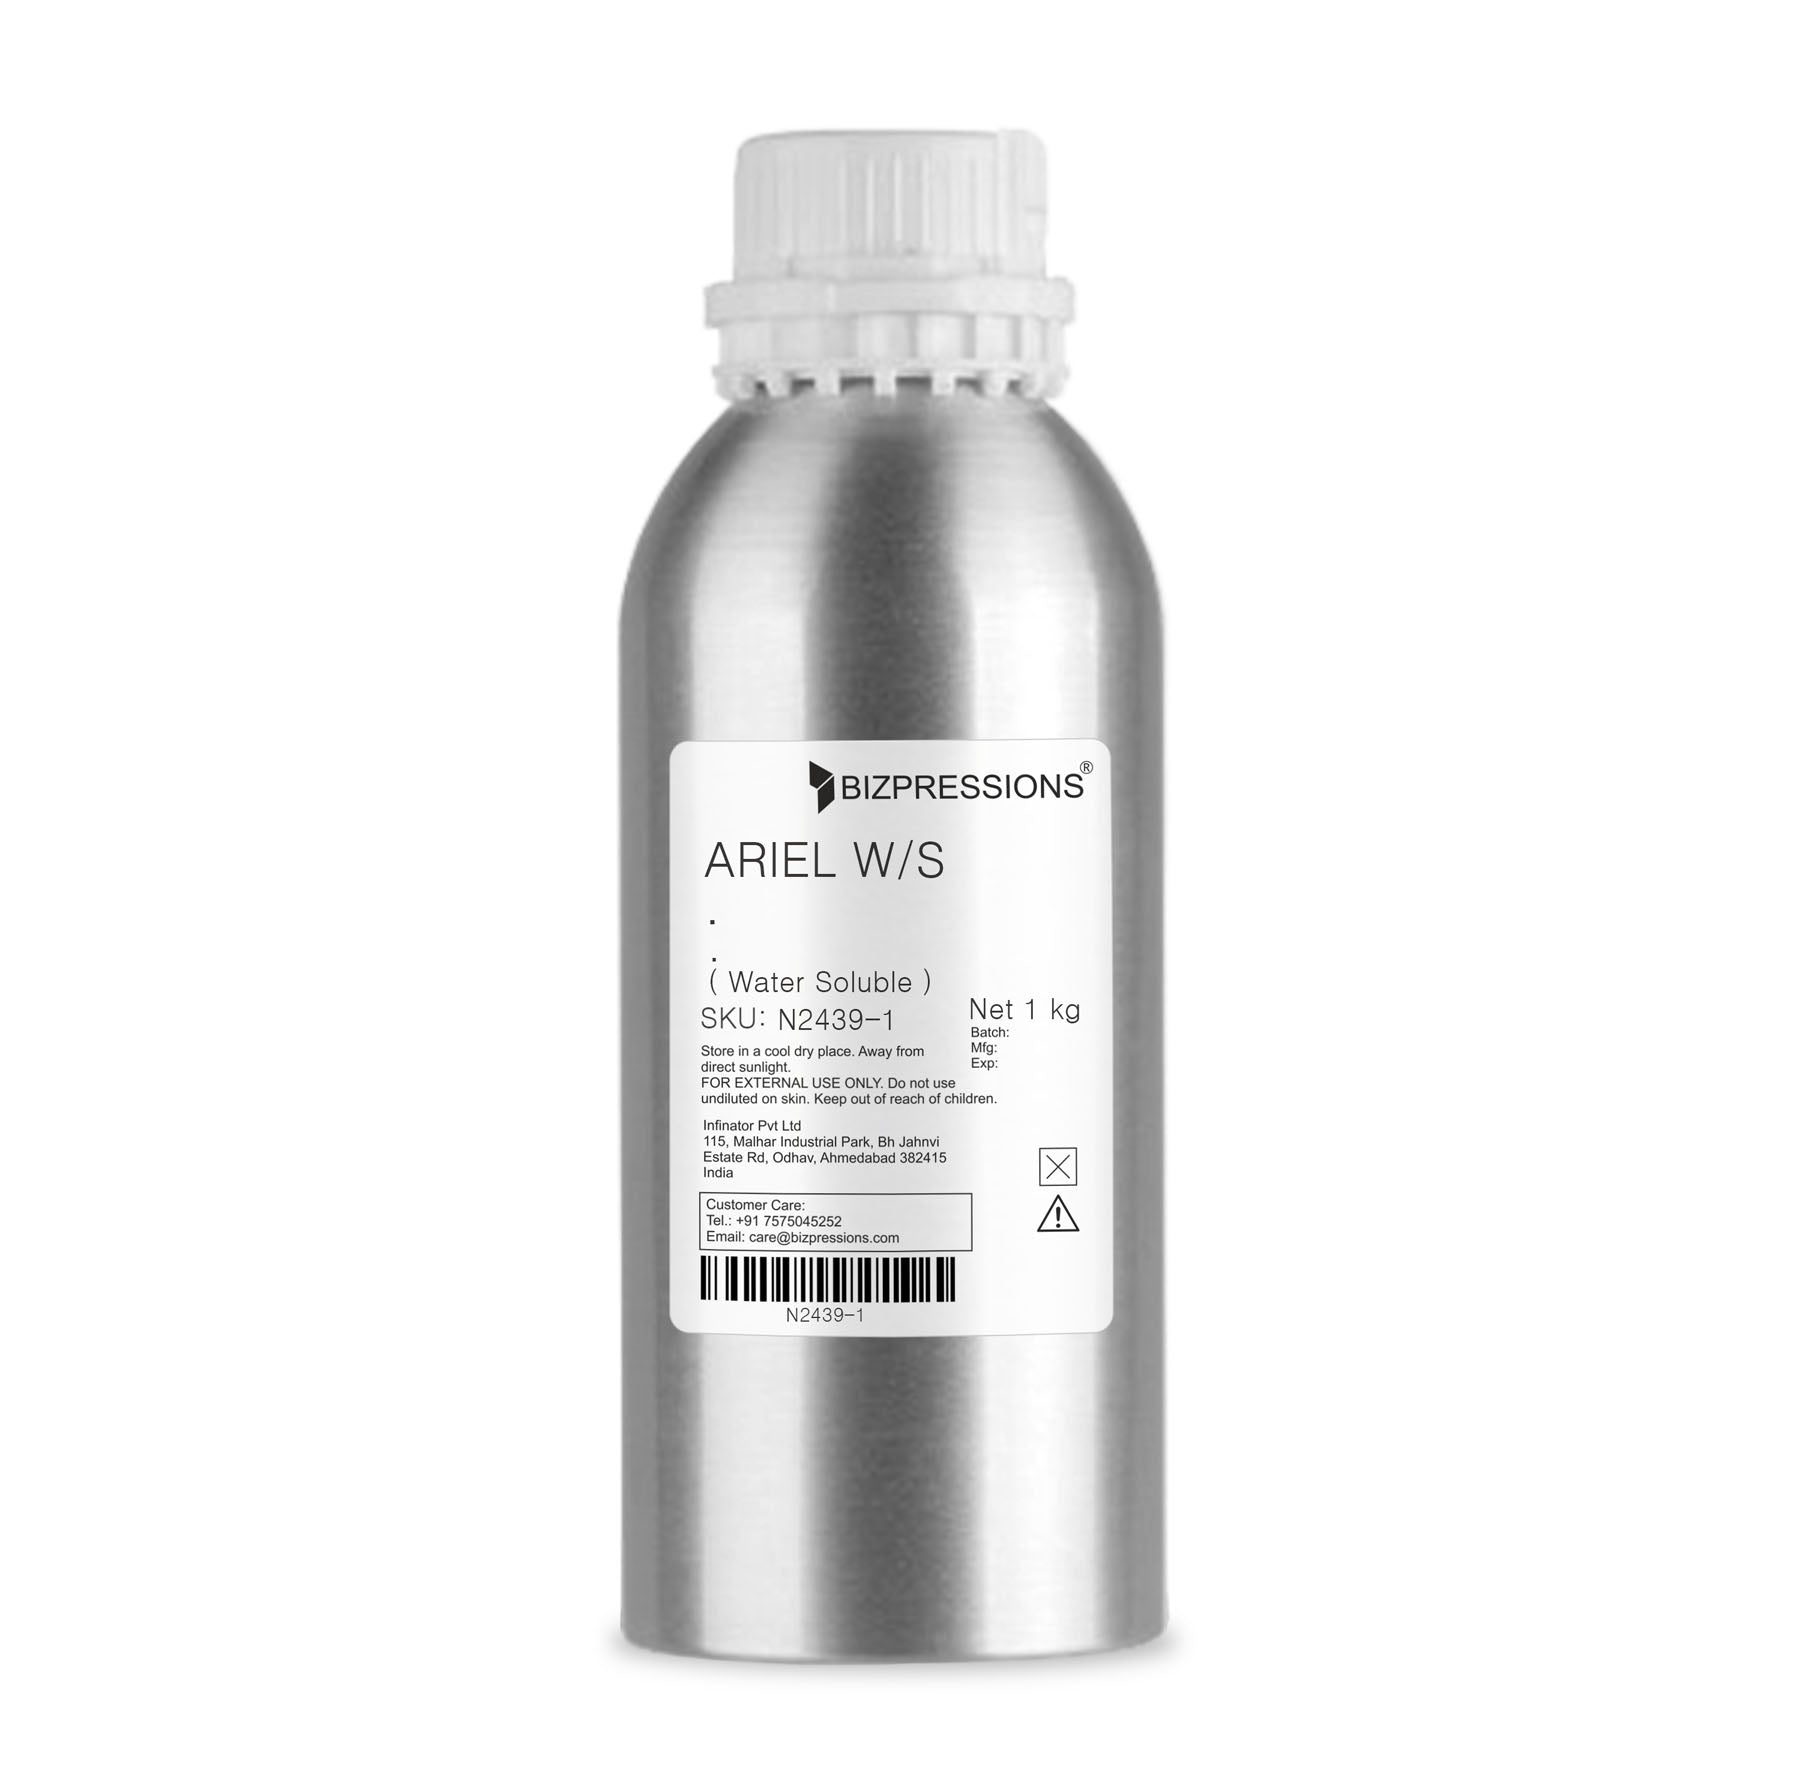 ARIEL W/S - Fragrance ( Water Soluble ) - 1 kg